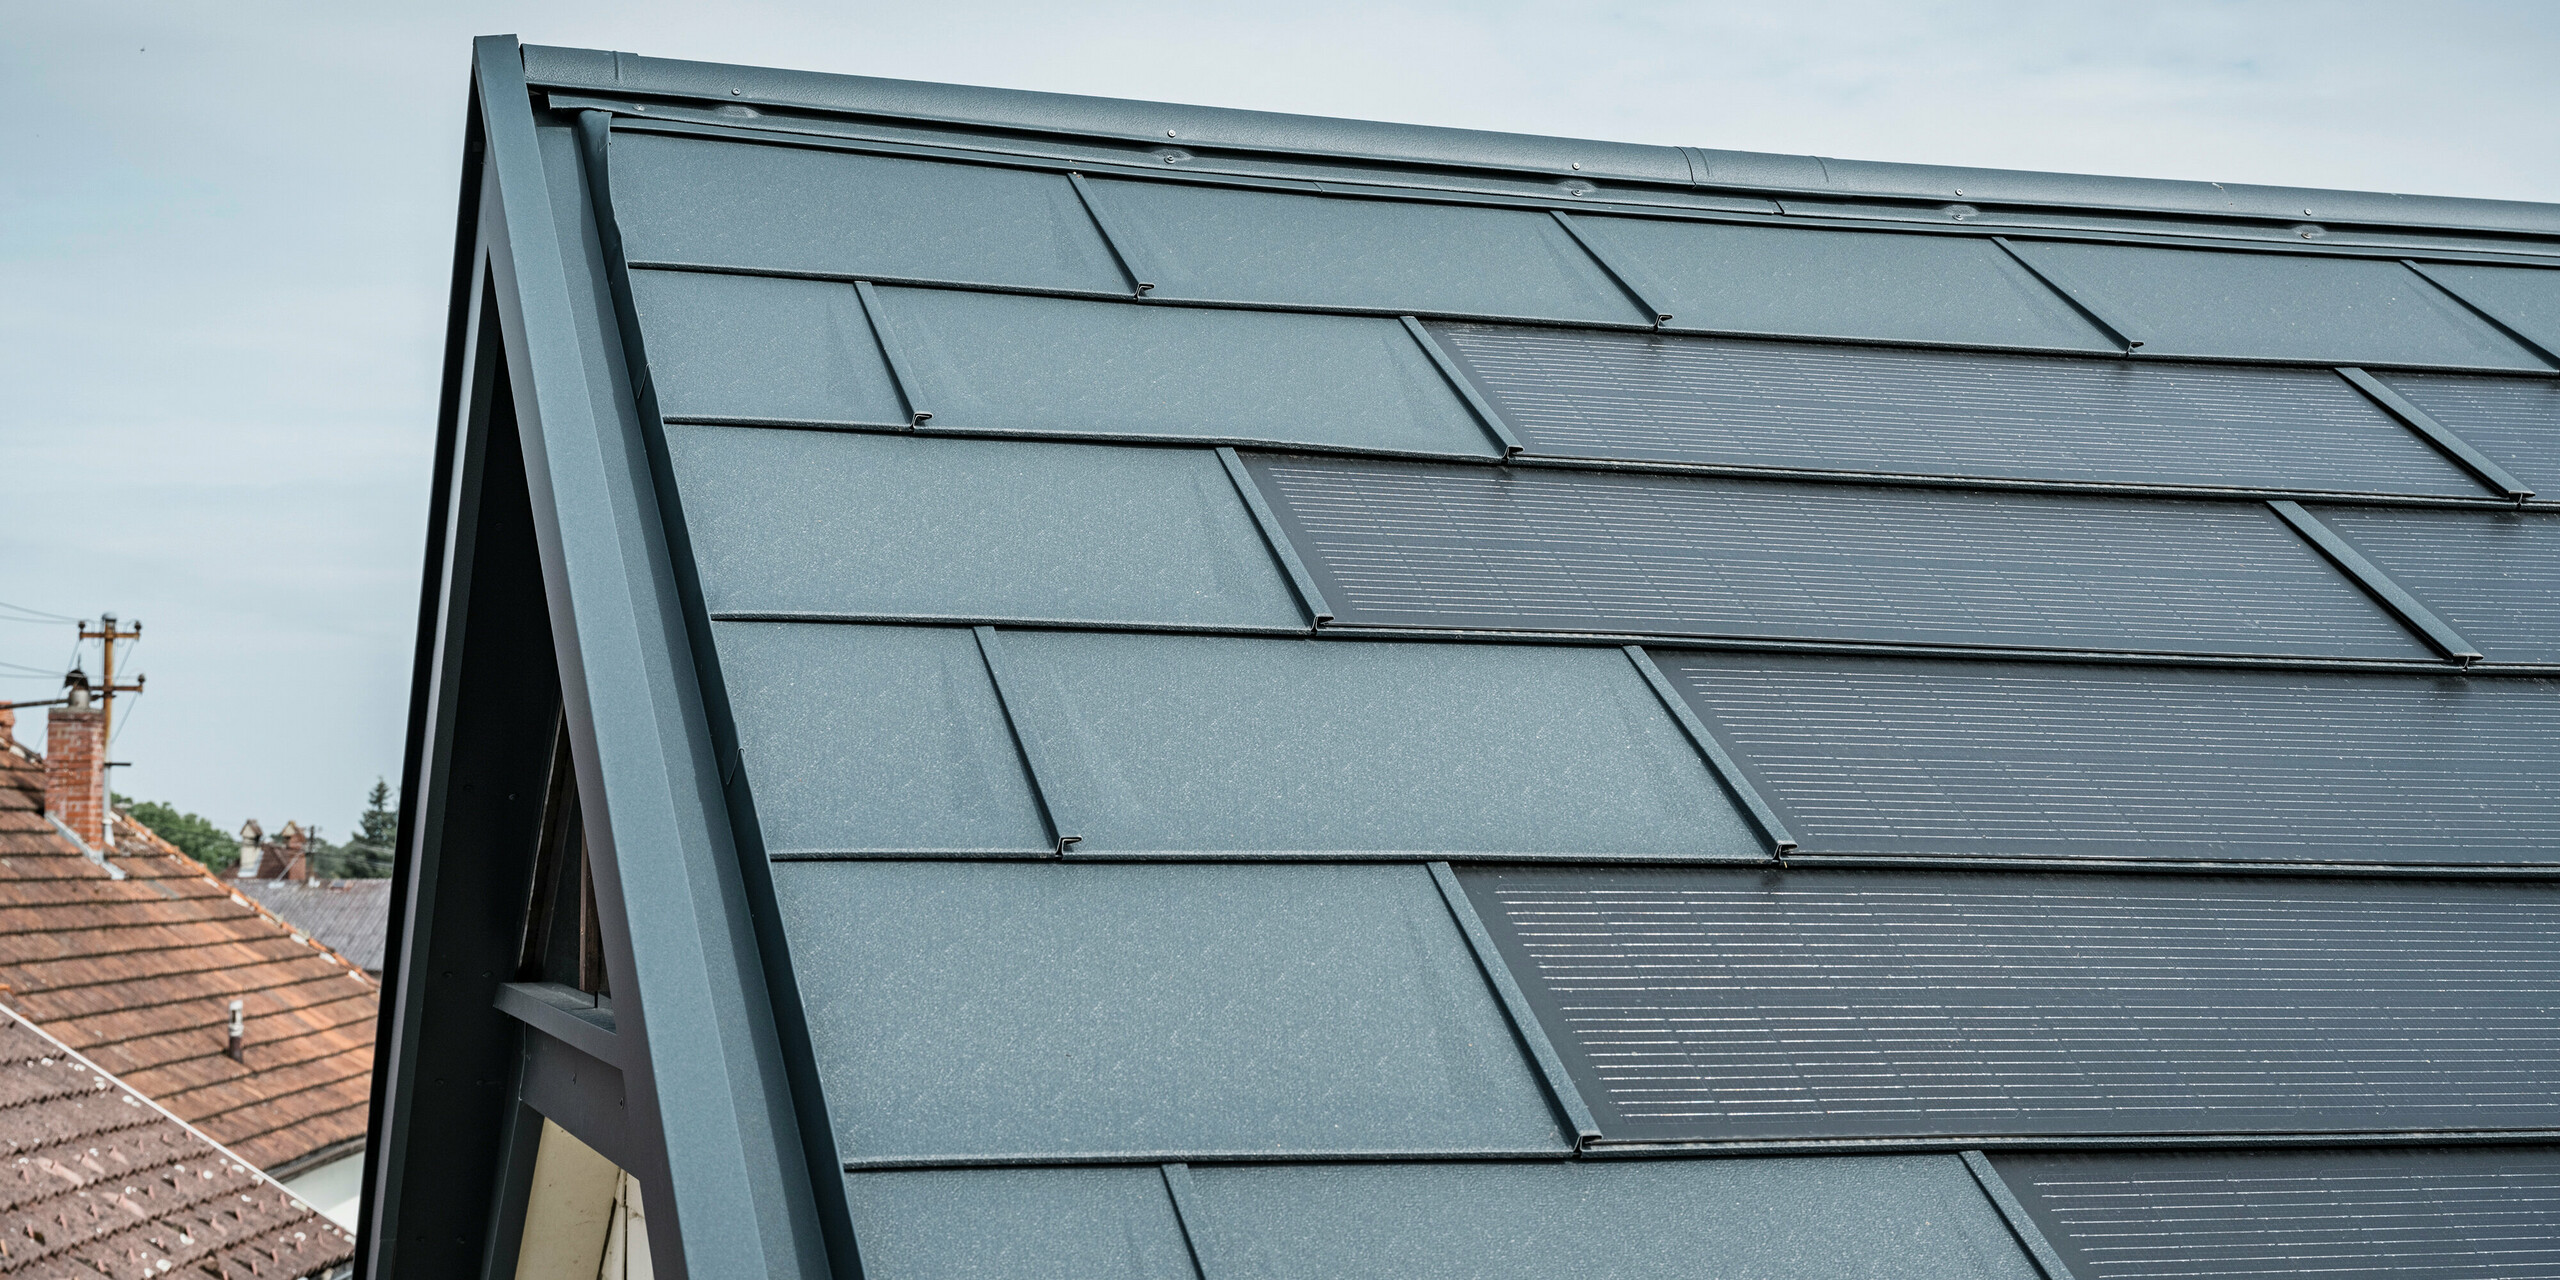 Detailansicht eines Hausdachs ausgestattet mit der innovativen PREFA Solardachplatte. Die Dachplatten mit integrierten Photovoltaikzellen präsentieren sich in einem eleganten Anthrazit. Die homogene Oberfläche fügt sich nahtlos in das Dach ein und sorgt damit für eine moderne und saubere Optik. Das innovative Dachsystem schafft eine effiziente Energienutzung ohne Beeinträchtigung der Ästhetik.